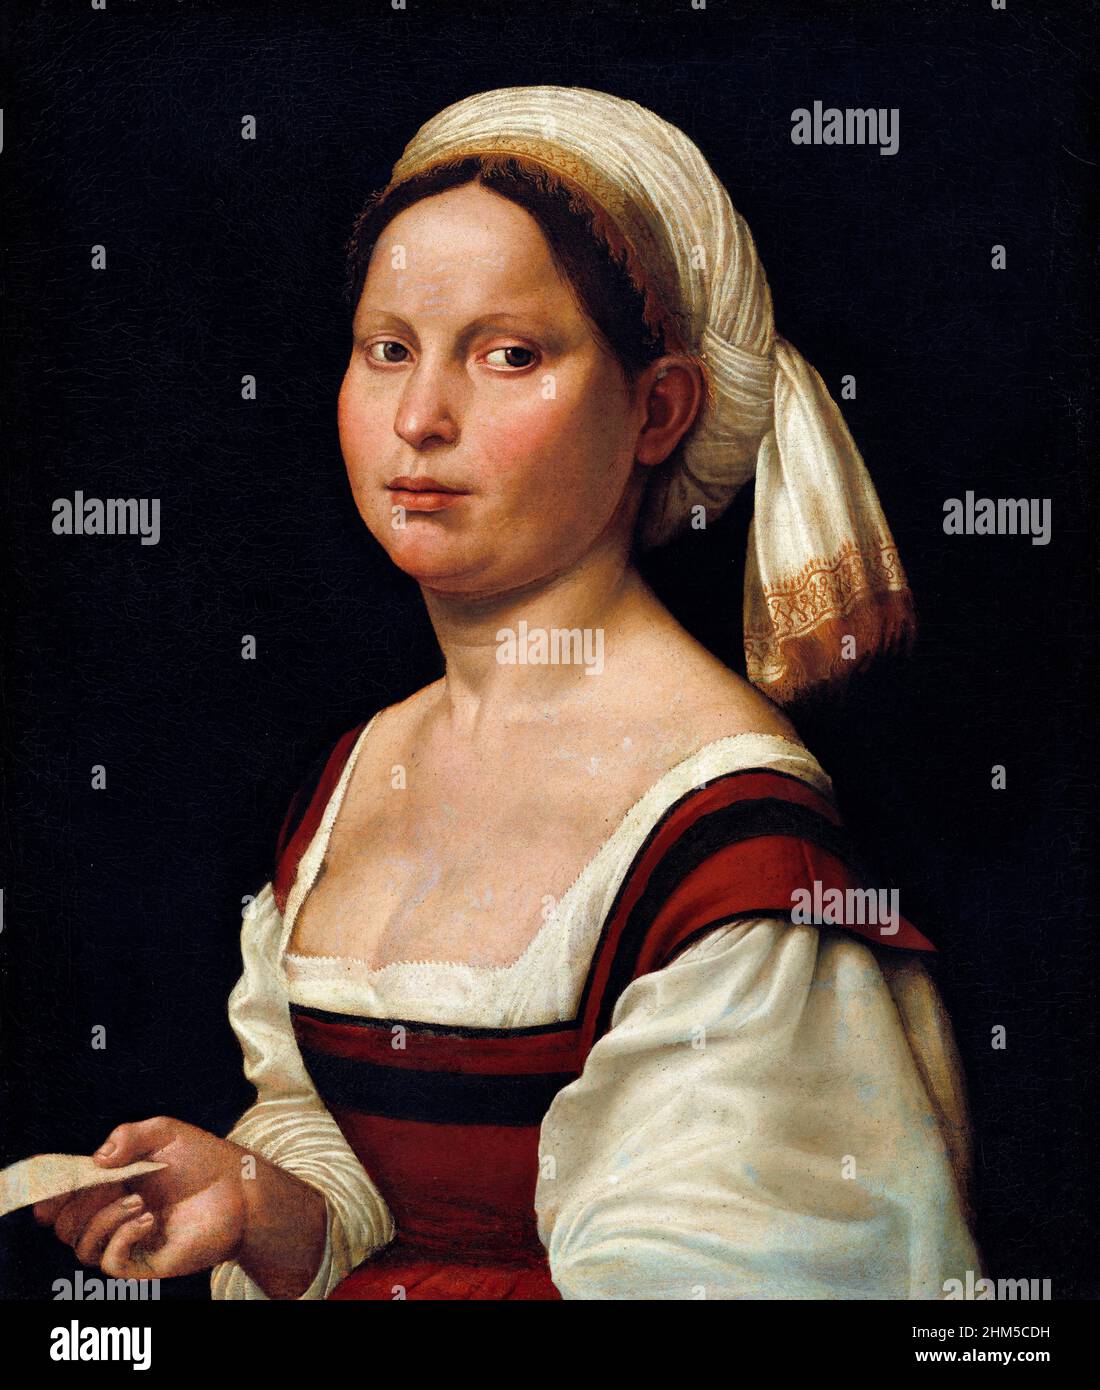 Portrait d'une jeune femme par l'artiste italien de la Renaissance, Giuliano Bugiardini (1475-1555), huile sur toile, c.1525 Banque D'Images